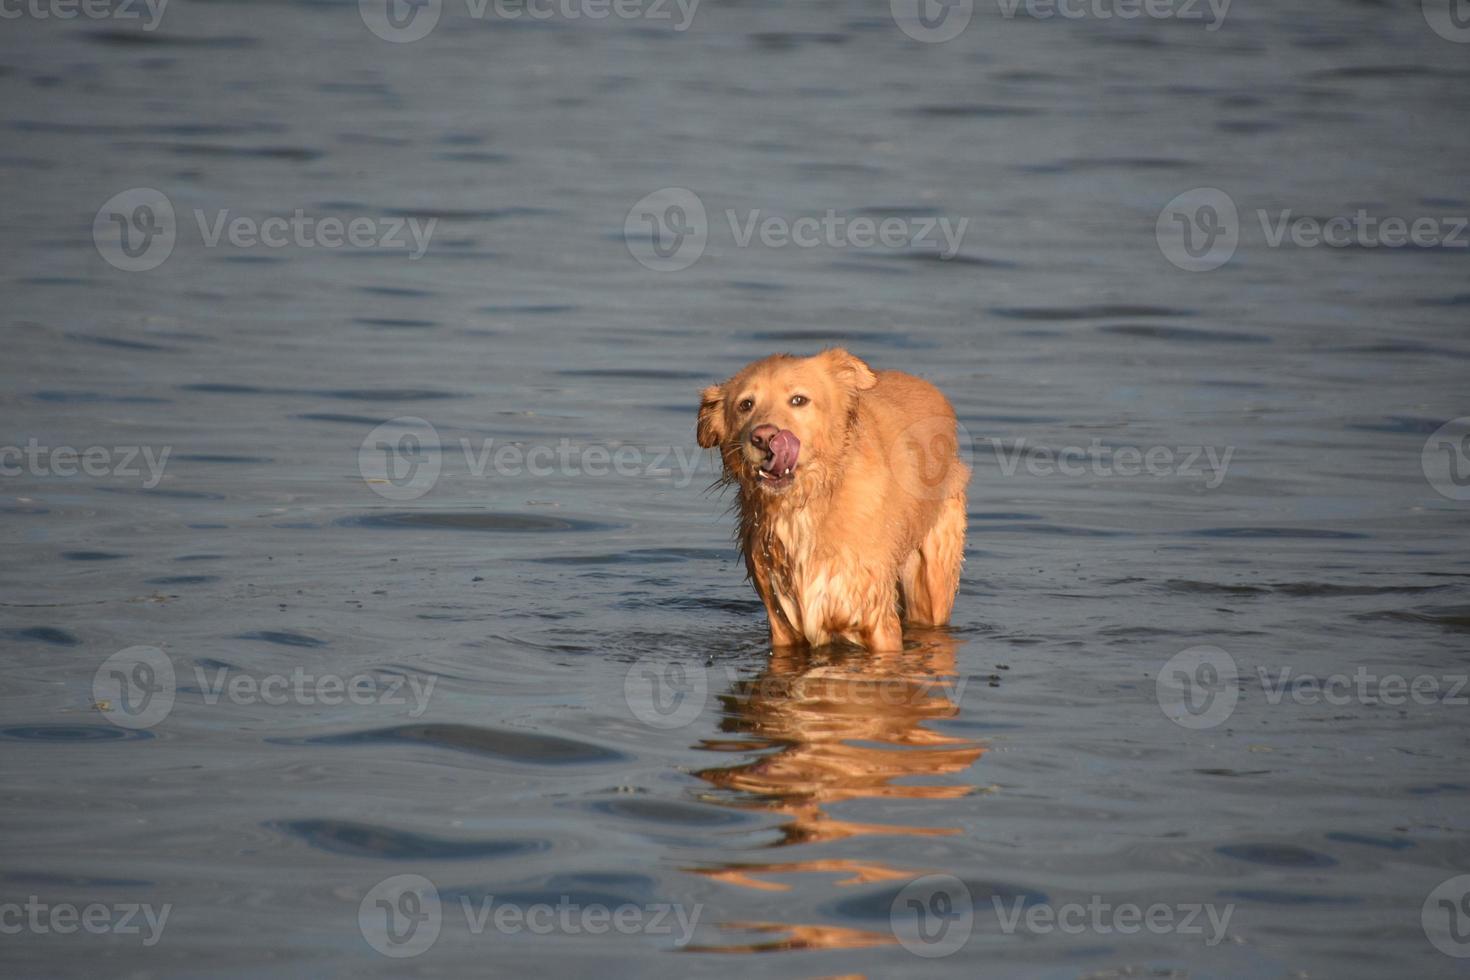 Wet canard péage retriever chien debout dans l'eau léchant son nez photo